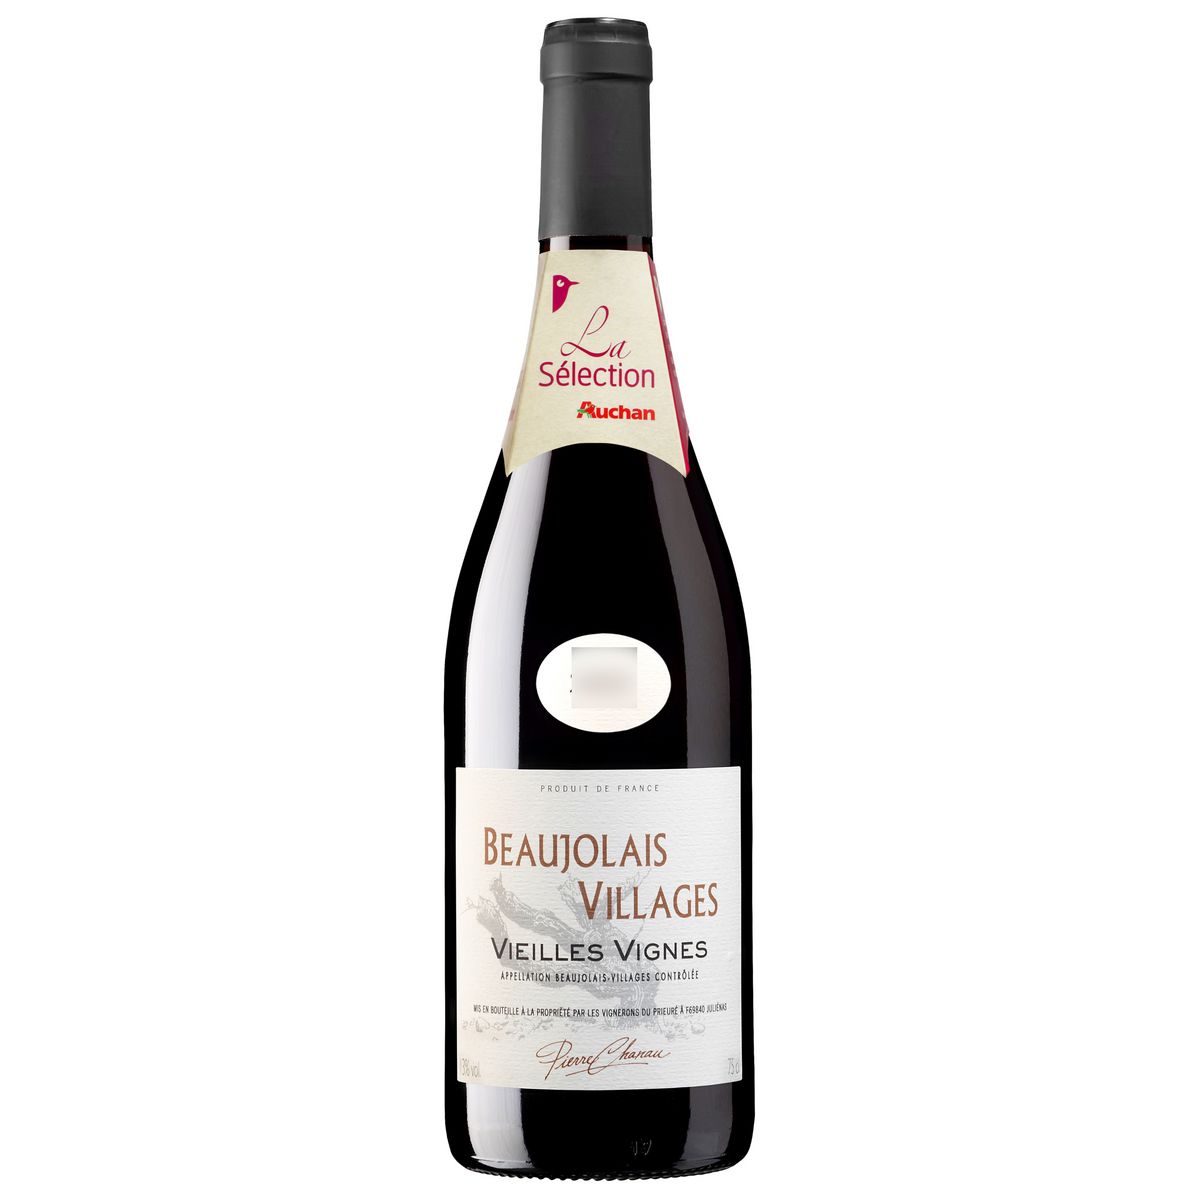 PIERRE CHANAU Vin rouge AOP Beaujolais Villages 2014 75cl